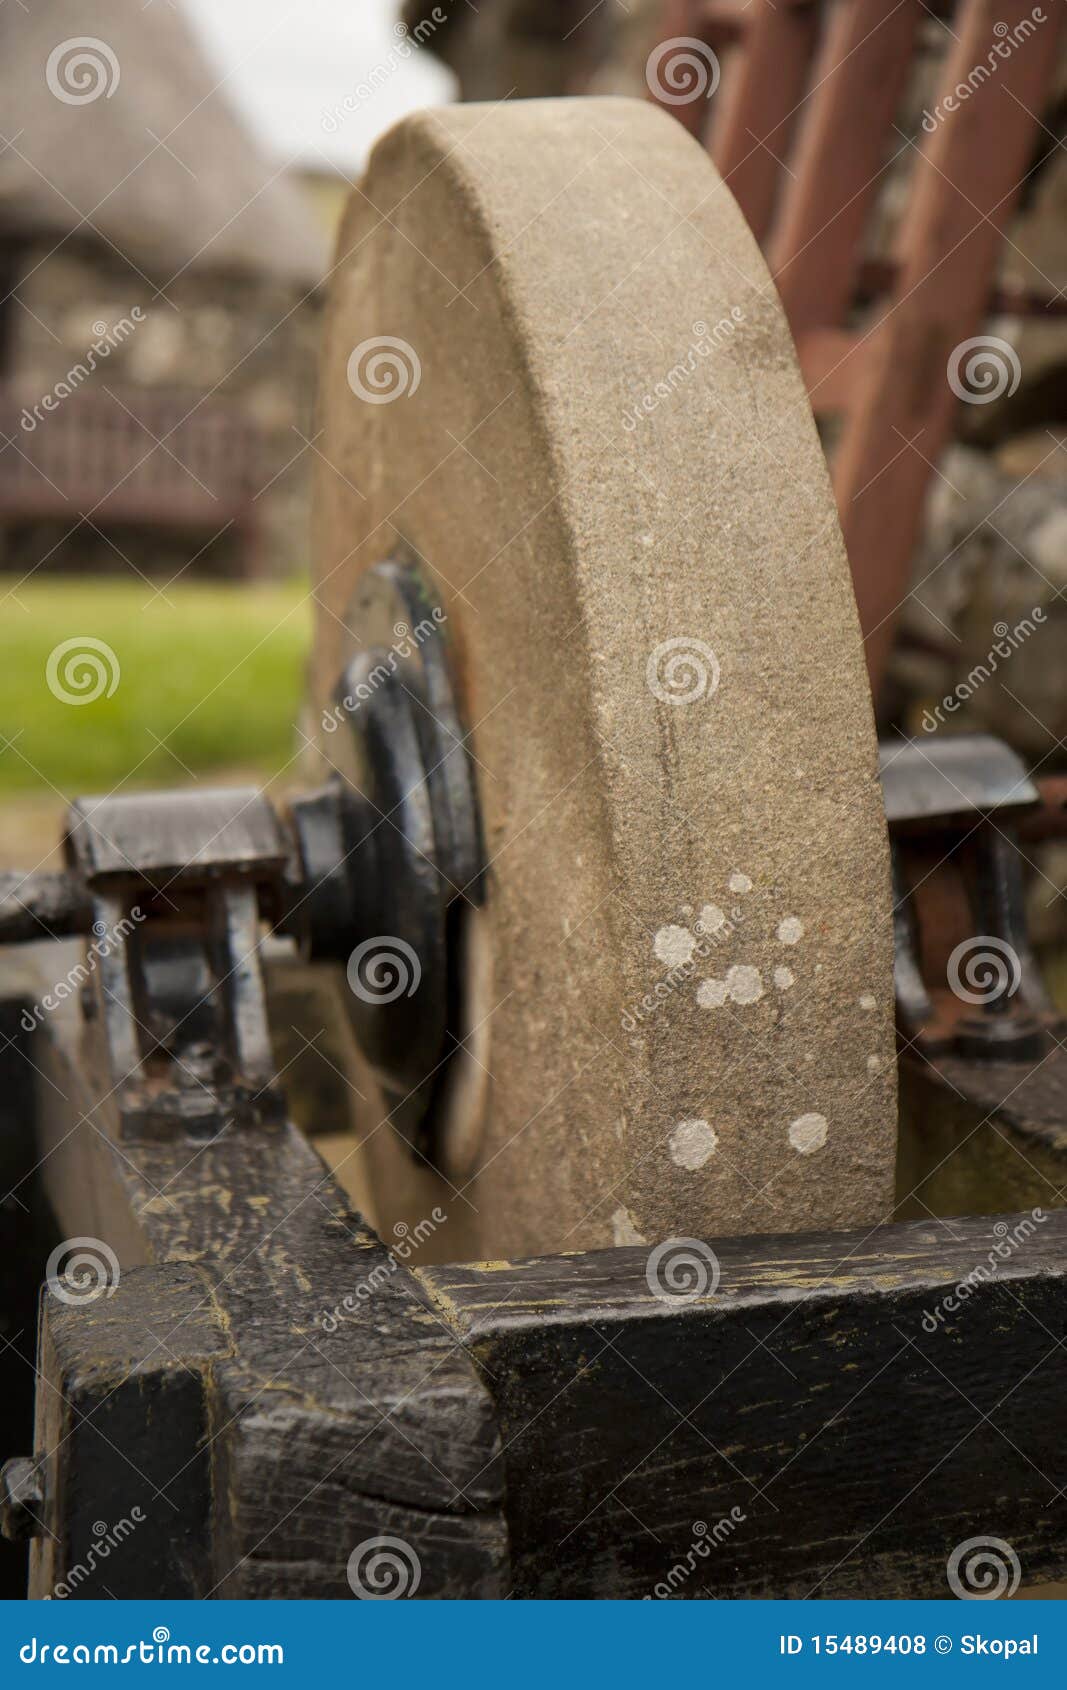 abrasive wheel - grinder